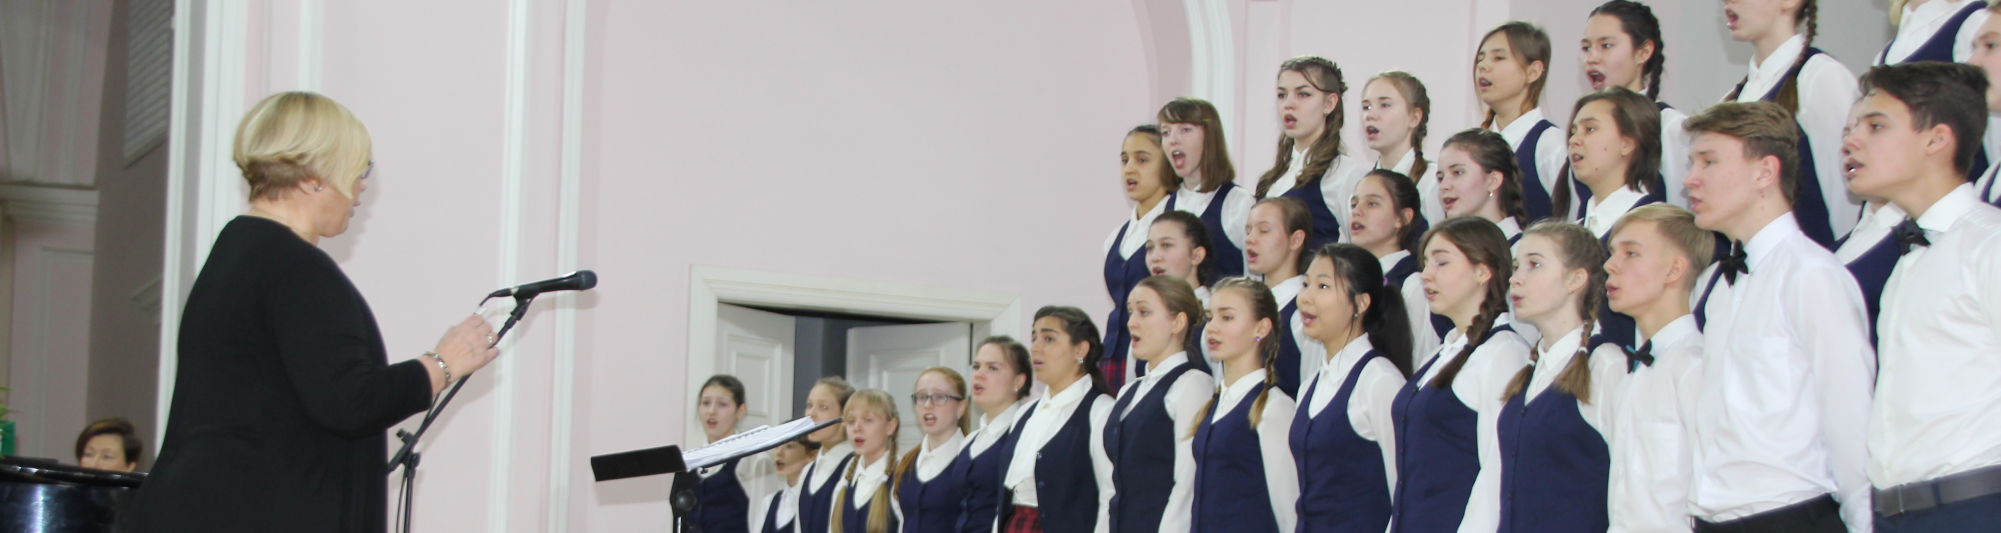 Отчетный концерт музыкально-хоровой школы «Фантазия» прошел в Томске